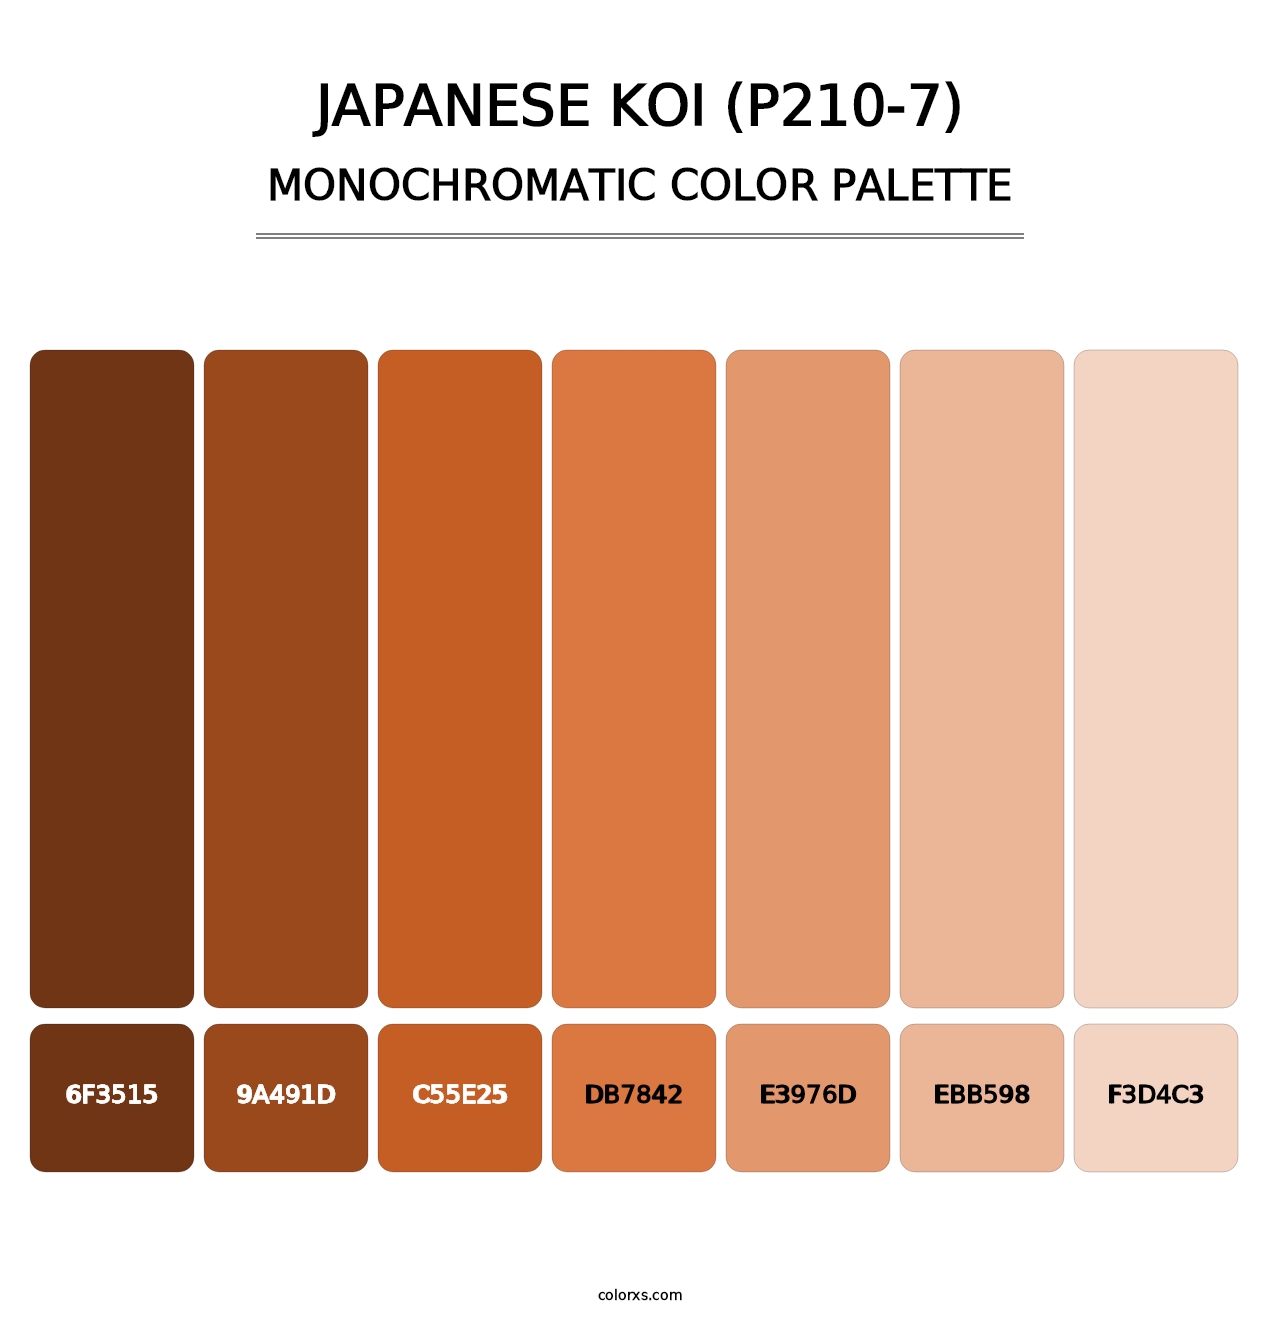 Japanese Koi (P210-7) - Monochromatic Color Palette